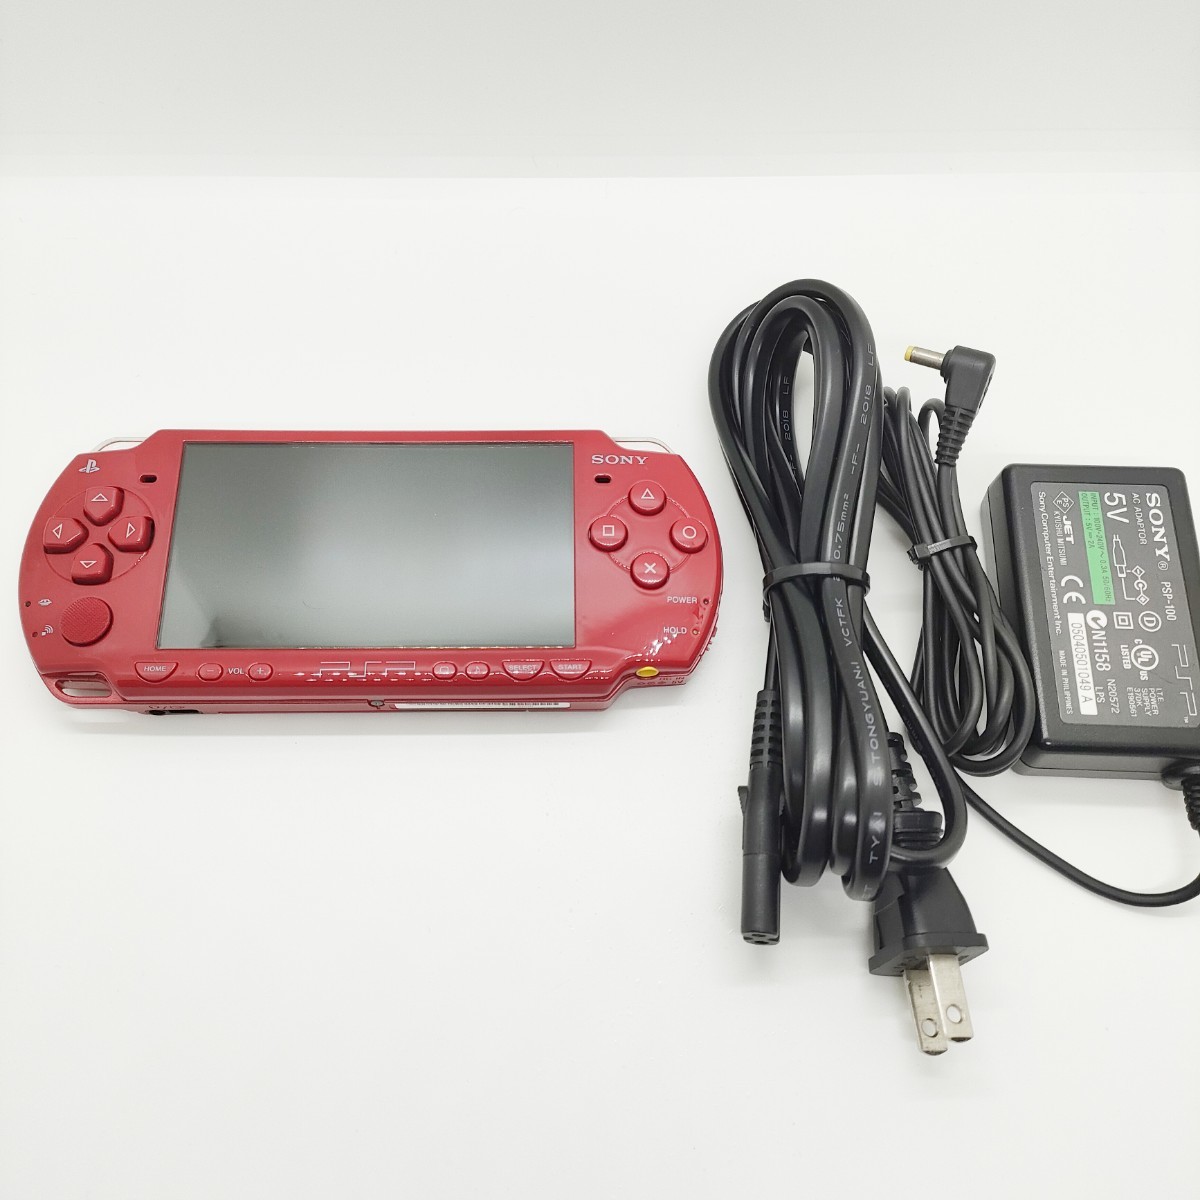 品質証明書付き 量販店展示品 SONY プレイステーション・ポータブル ディープ・レッド ワンセグパック PSP-2000DRX メーカー生産終了品  数量限定発売